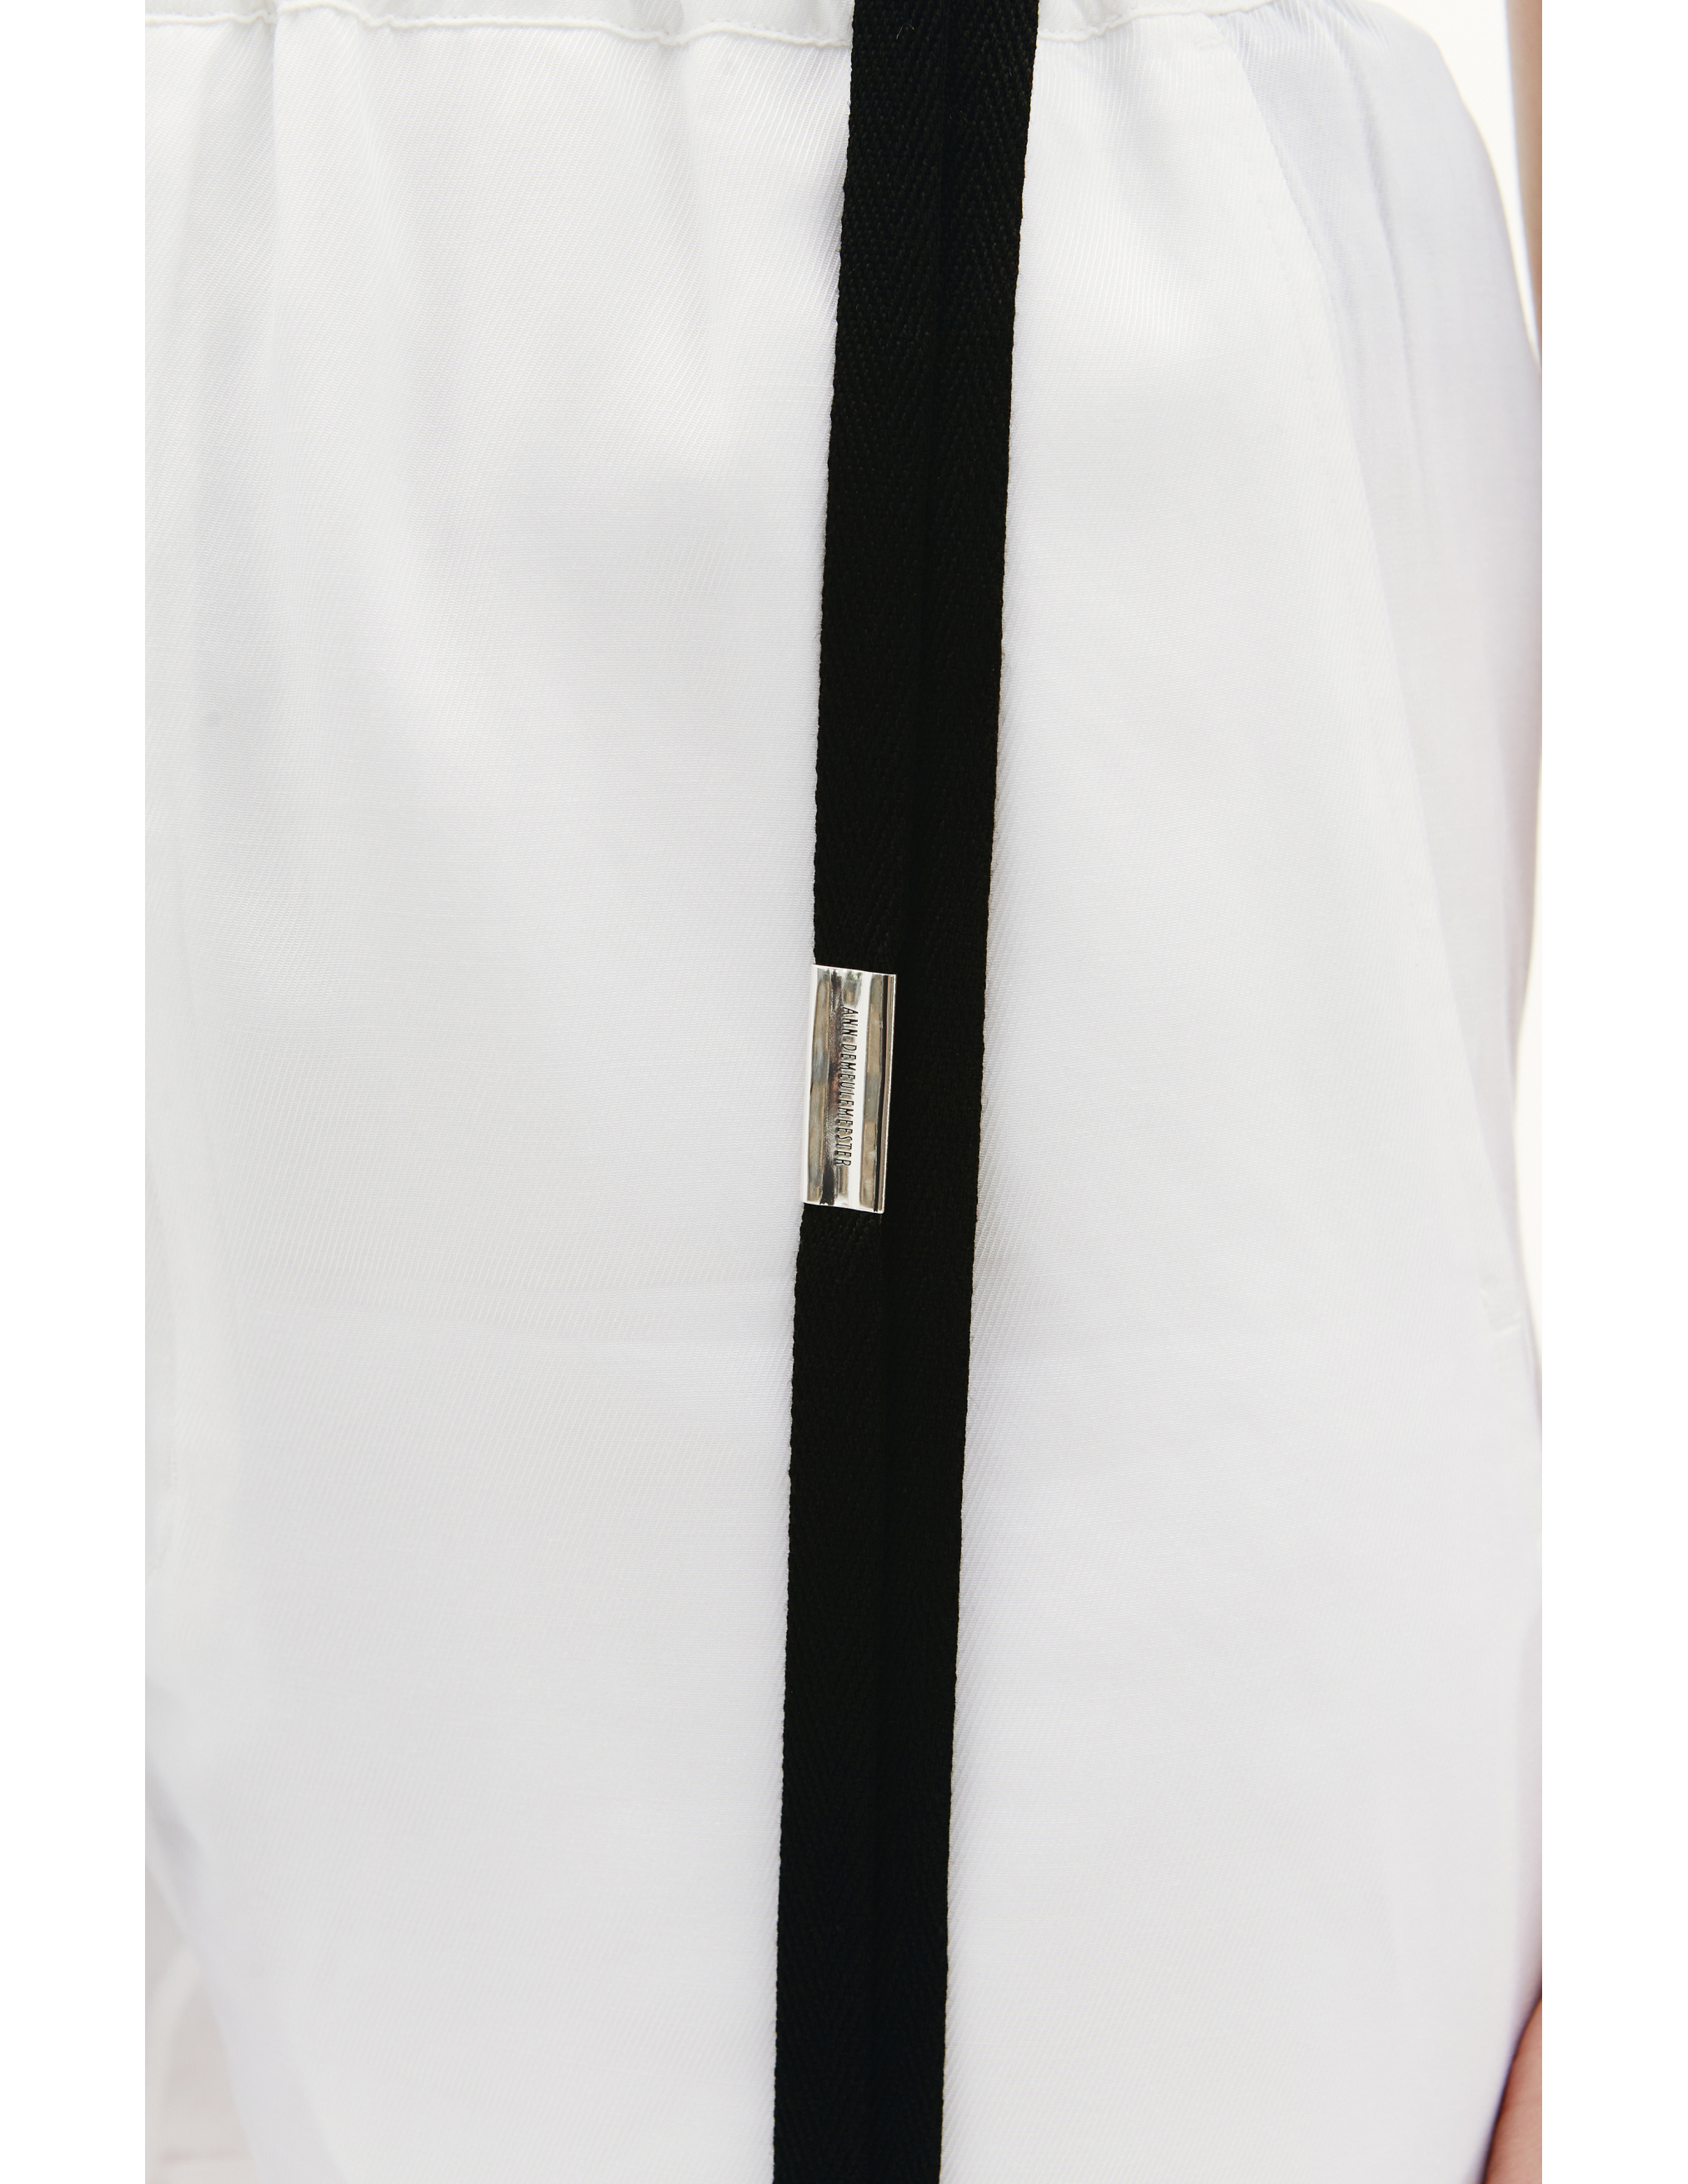 Белые шорты Angela с контрастными лентами - Ann Demeulemeester 2201-W-TR52-135-001 Фото 4